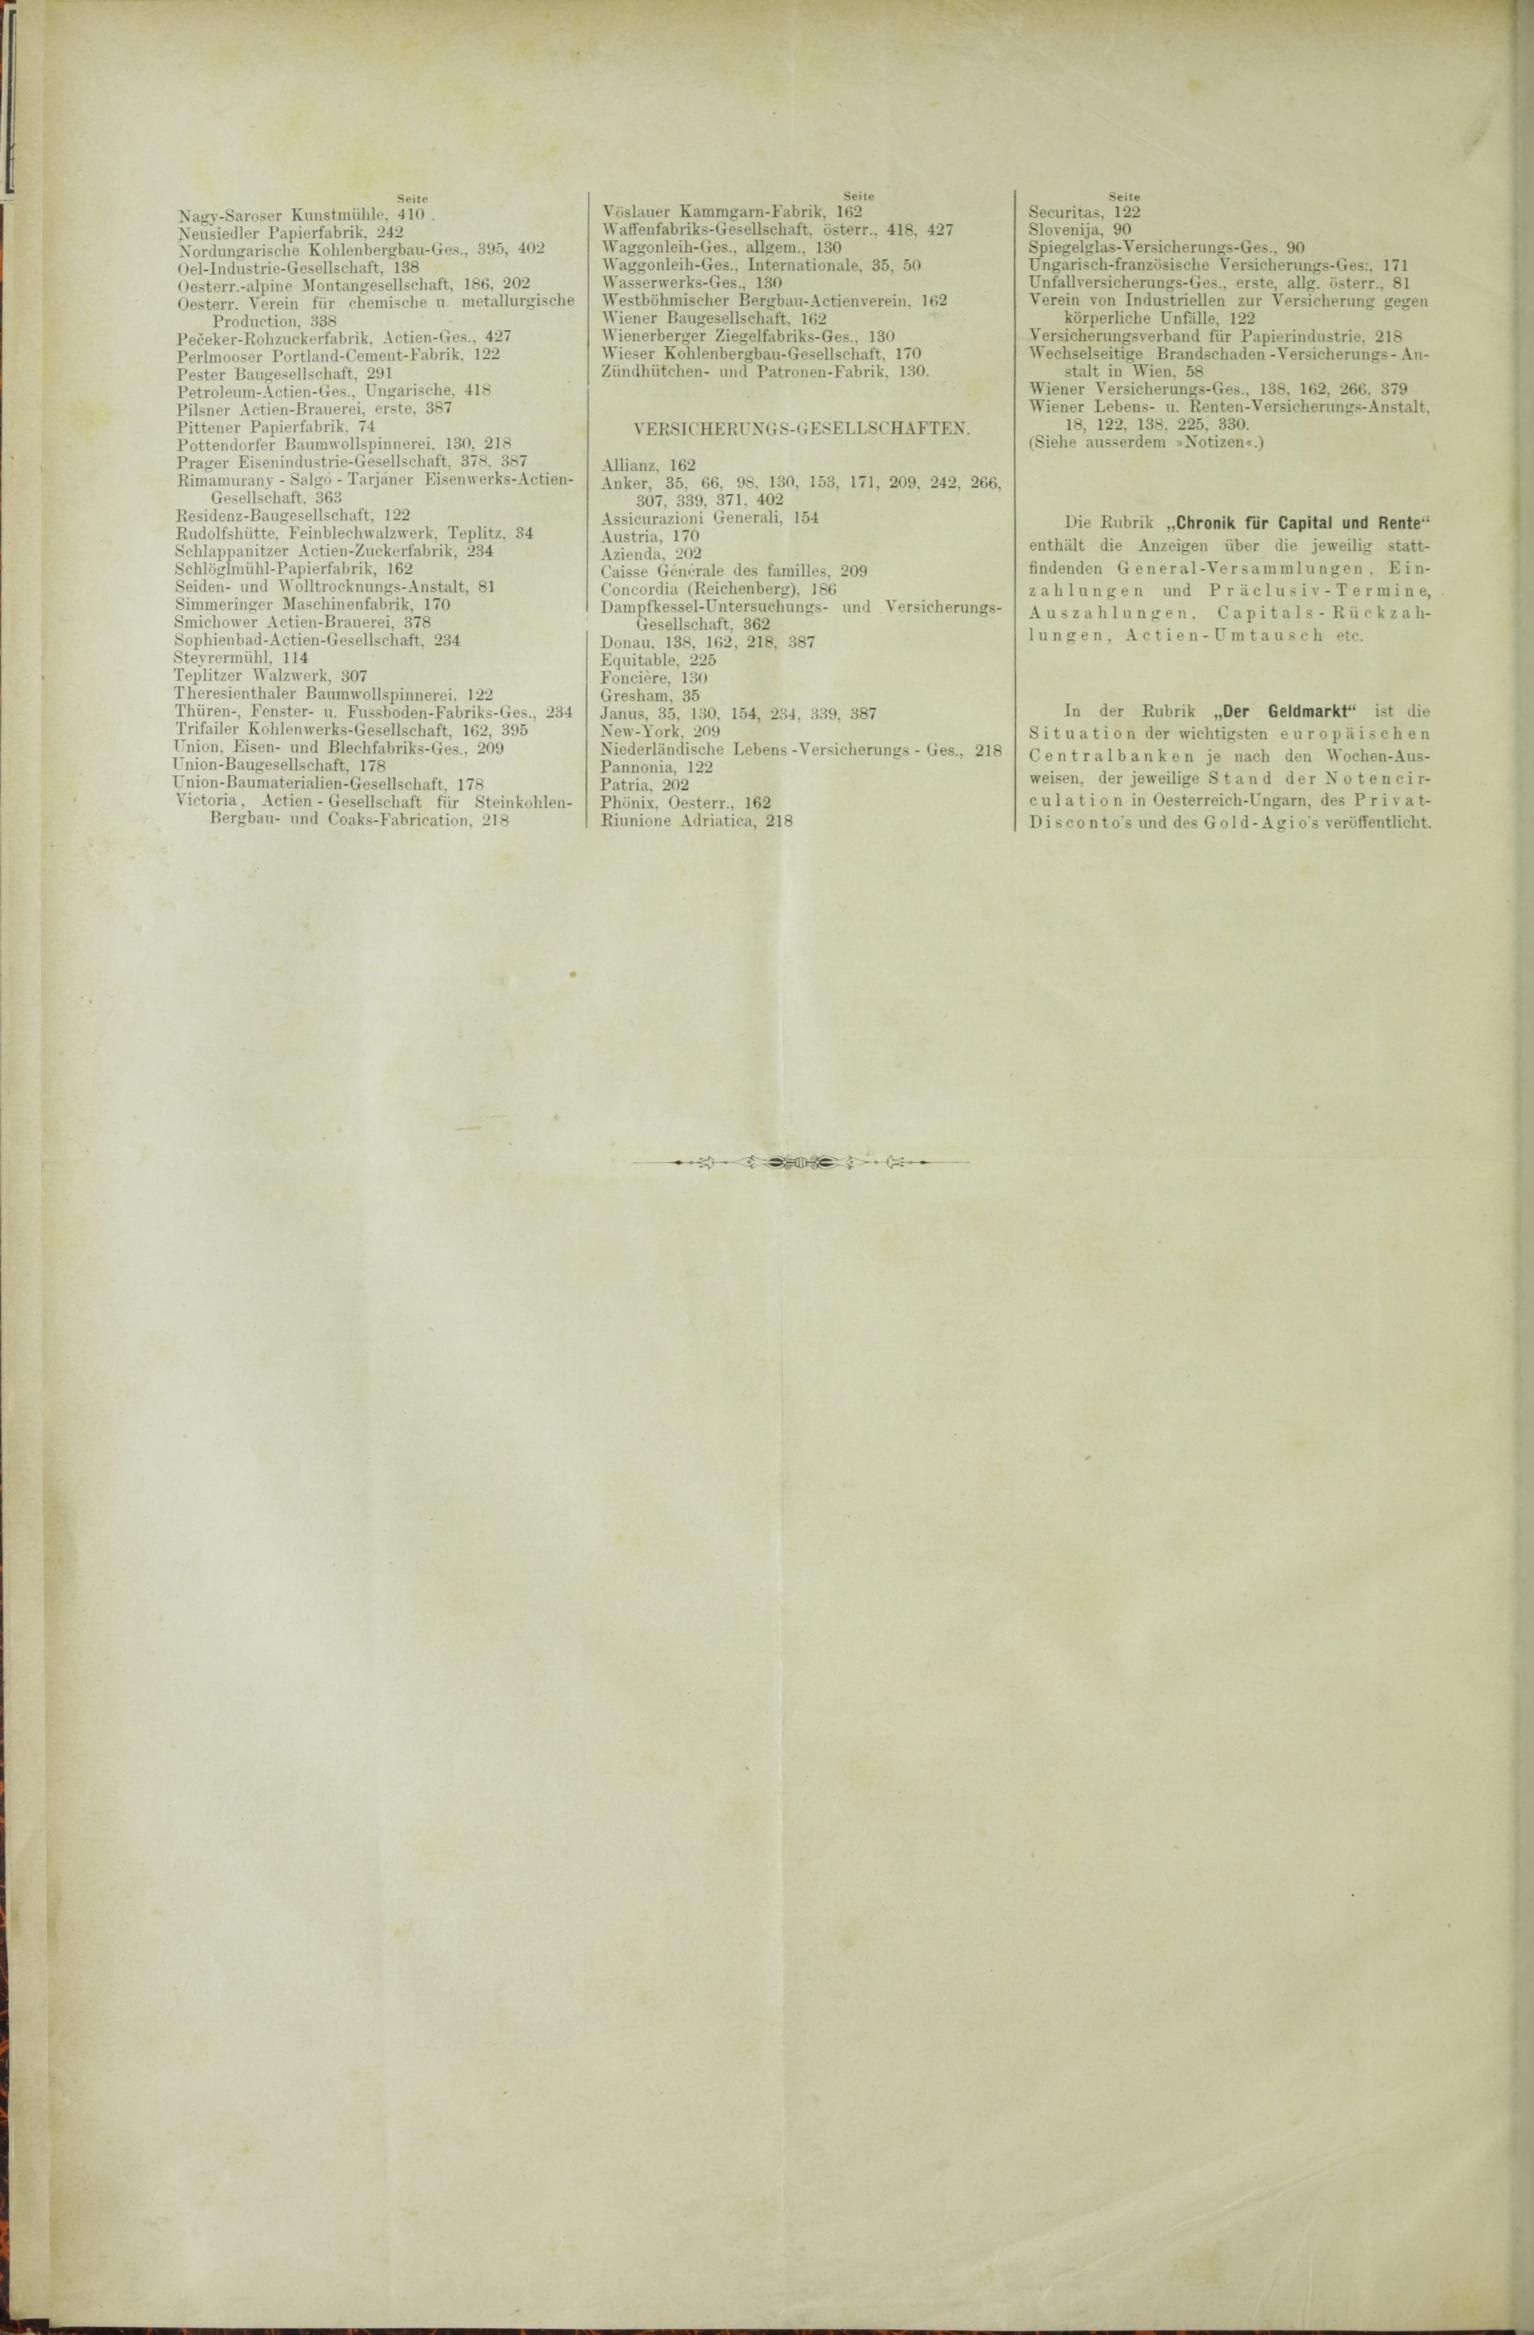 Der Tresor 28.05.1885 - Seite 12